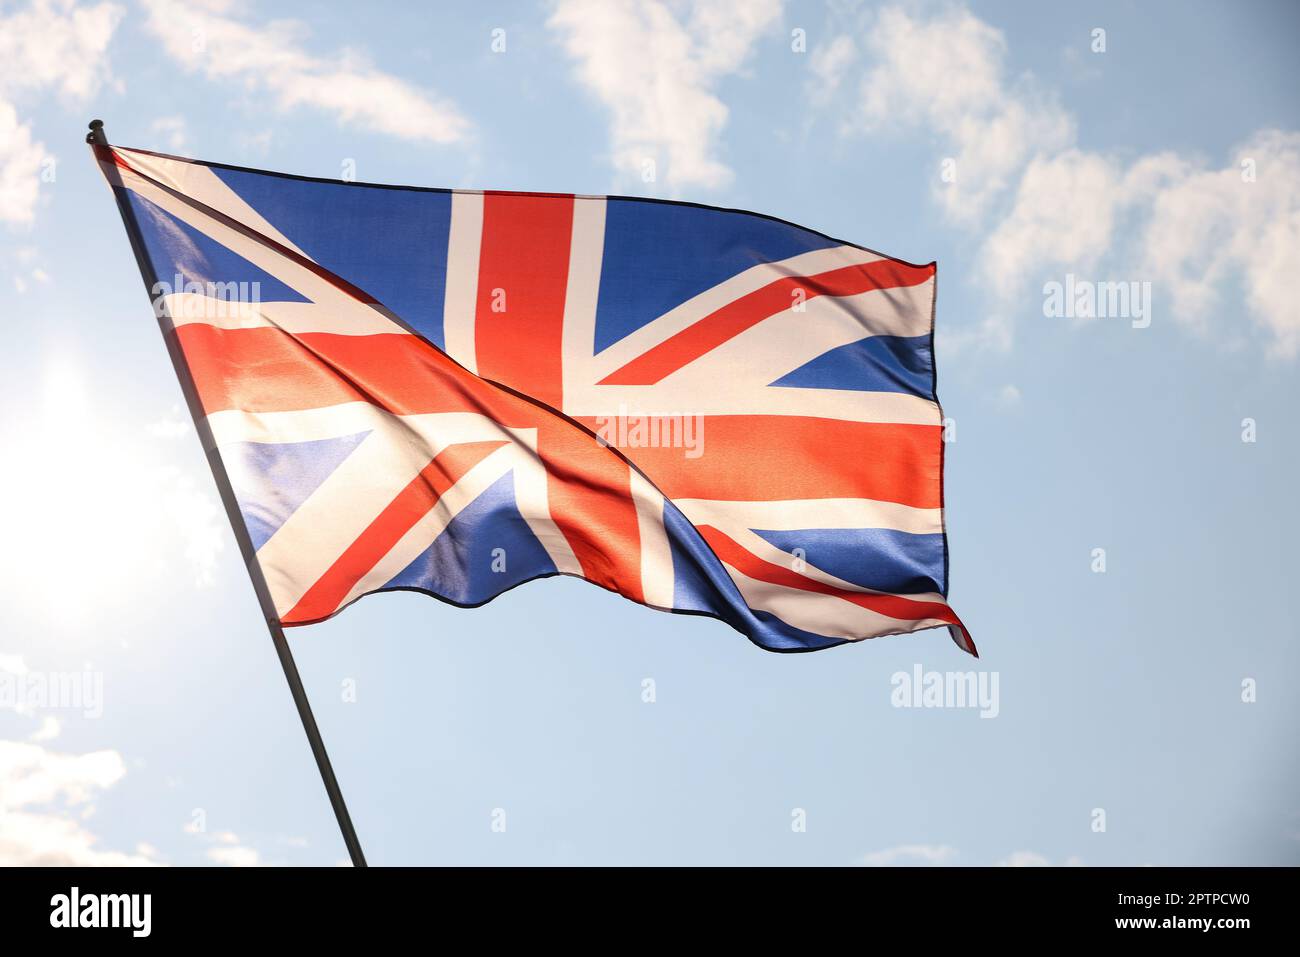 Royaume-Uni drapeau national de Grande-Bretagne volant et en agitant dans le vent, rétroéclairé dans l'heure d'or avant le coucher du soleil, sur ciel bleu ciel nuageux, symbole du patriotisme britannique Banque D'Images